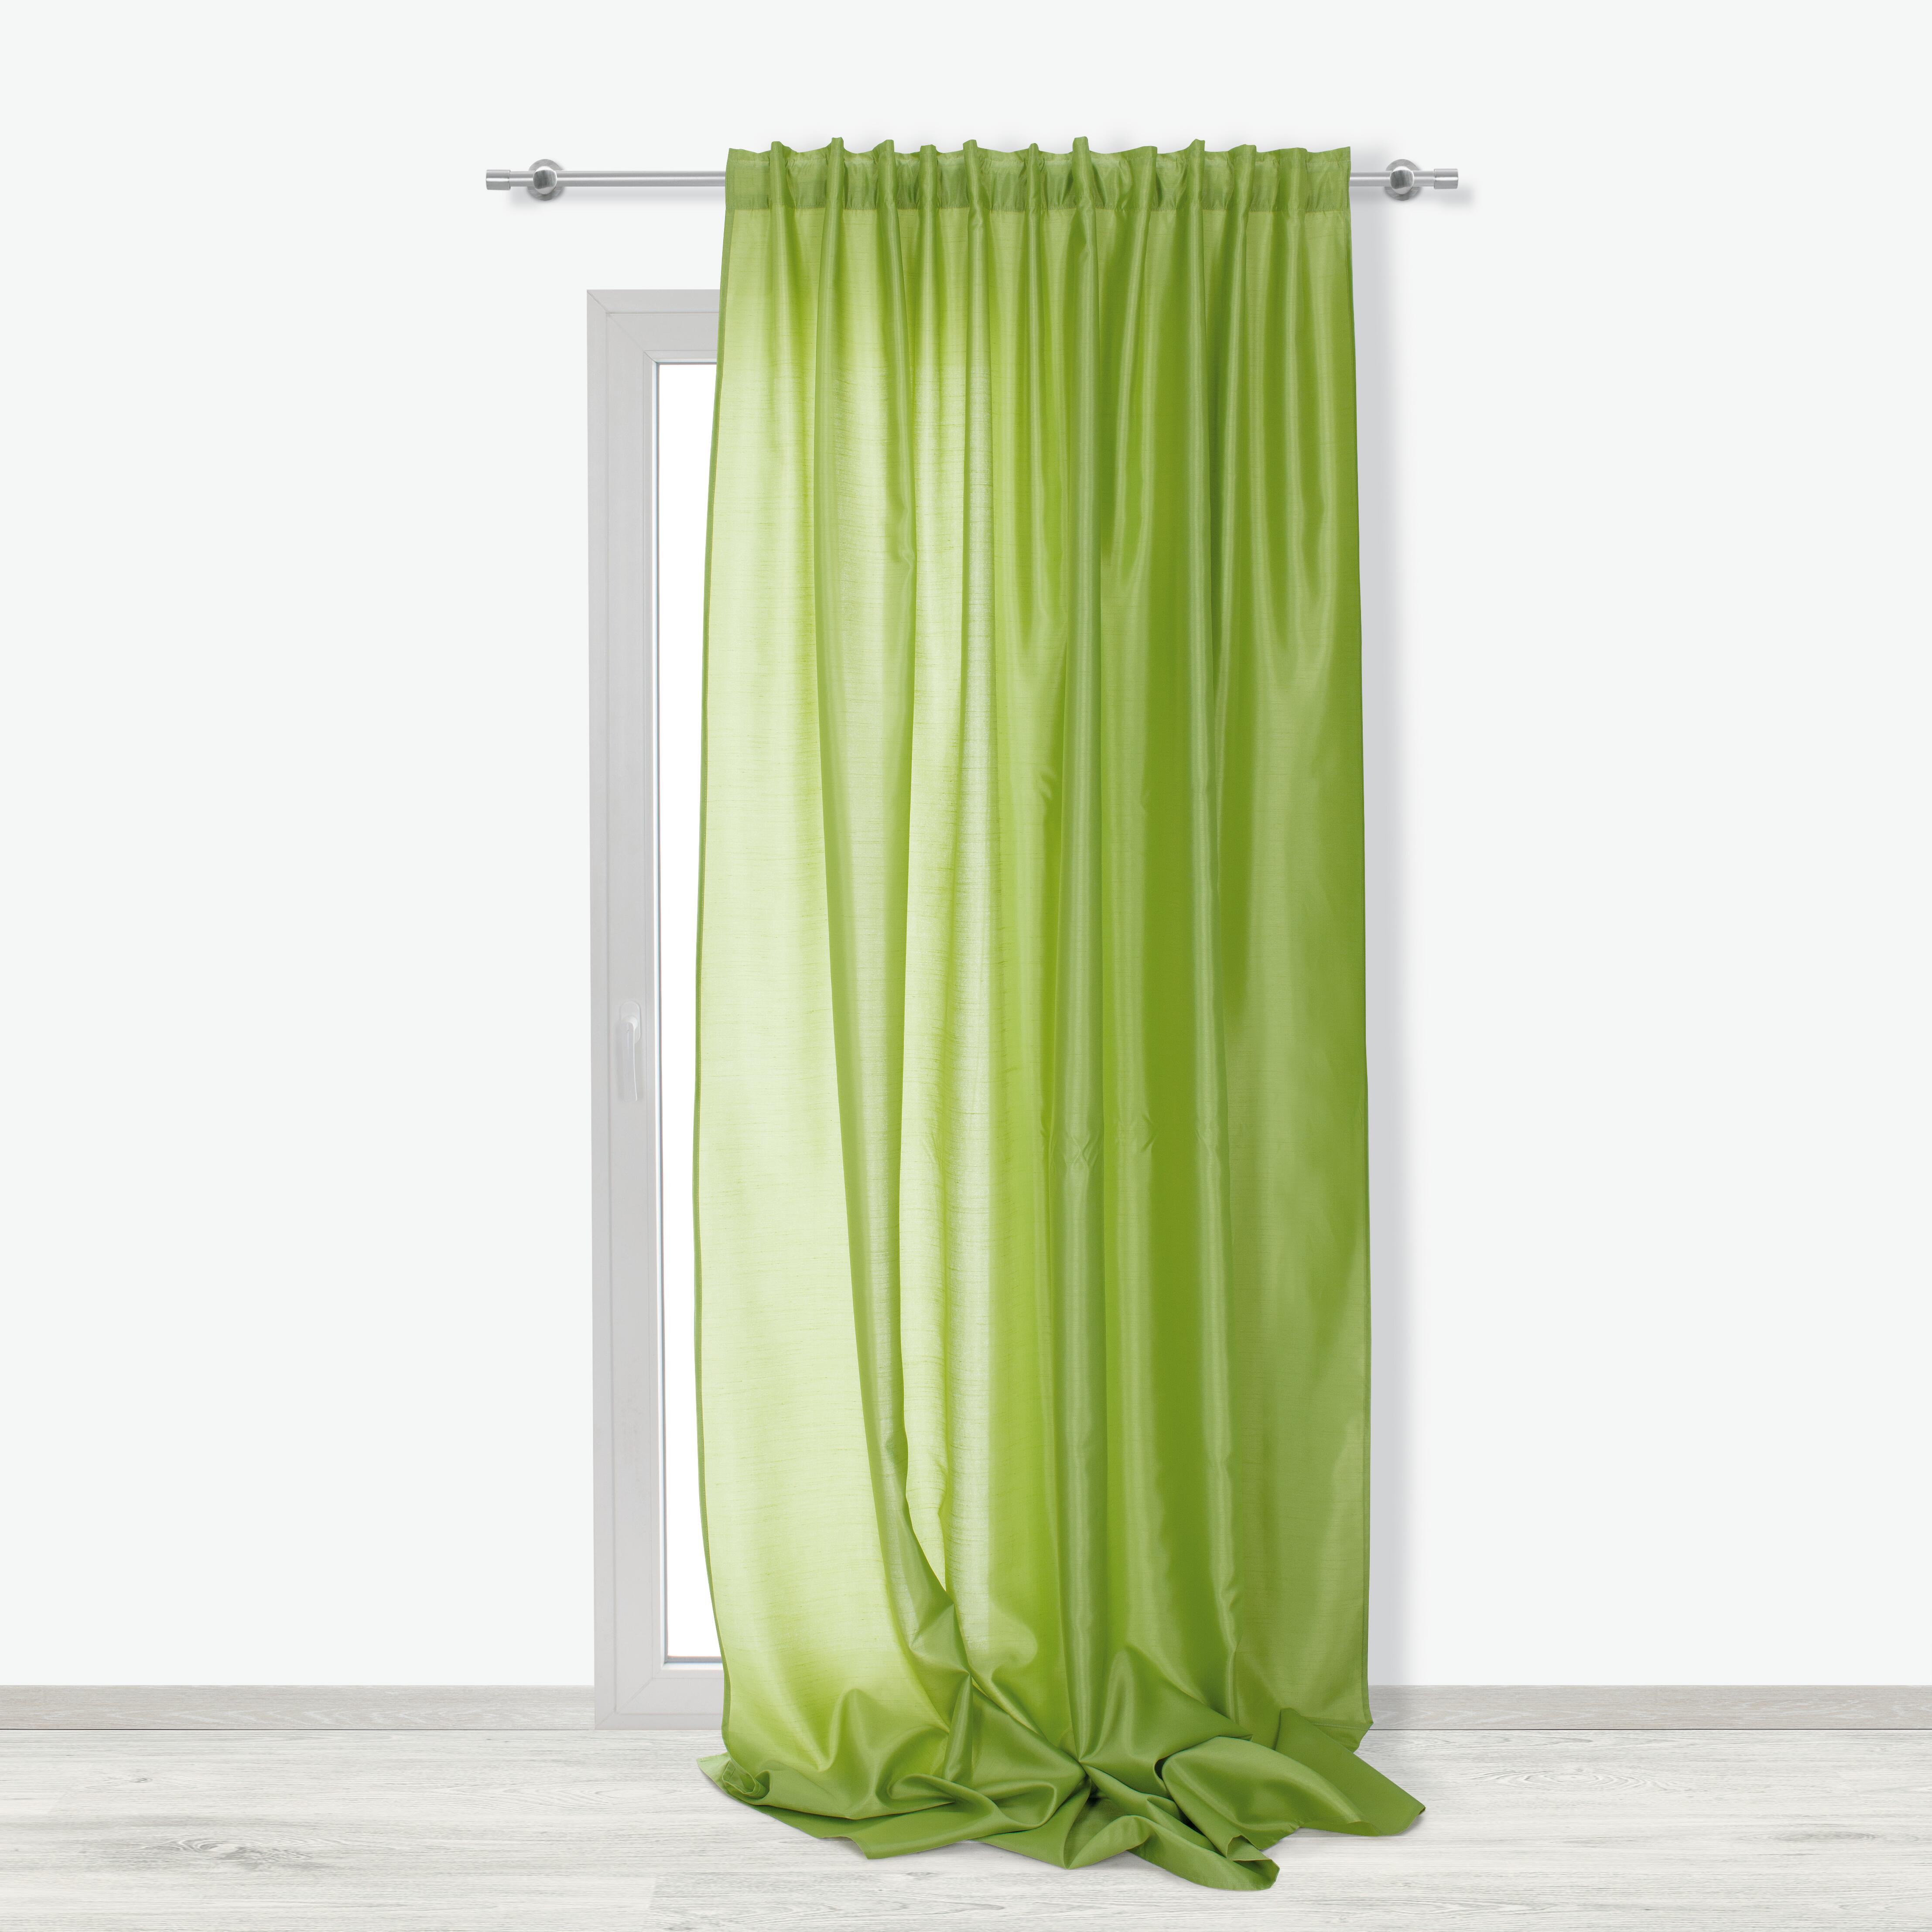 Tenda coprente INSPIRE New Silka verde fettuccia con passanti nascosti  200x280 cm